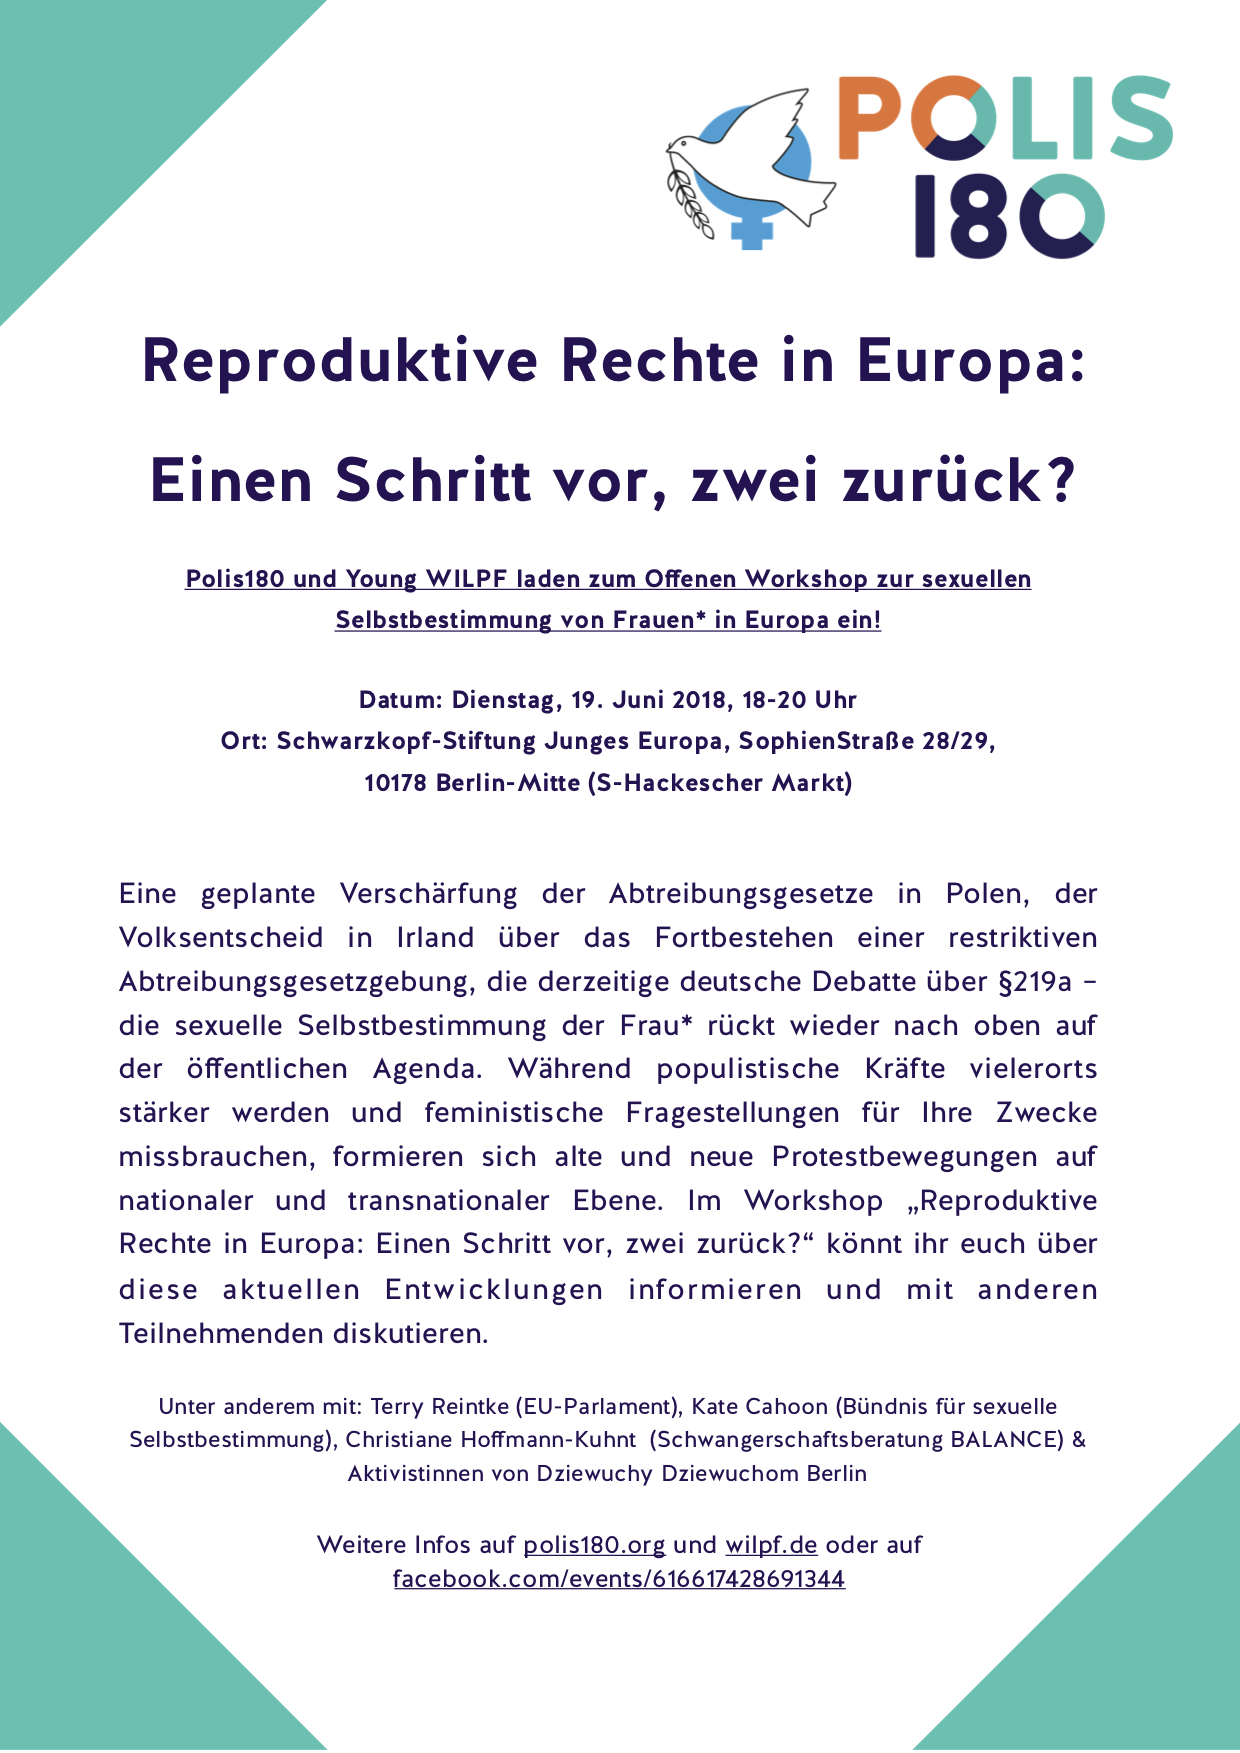 Reproduktive Rechte in Europa: Ein Schritt vor, zwei zurück?